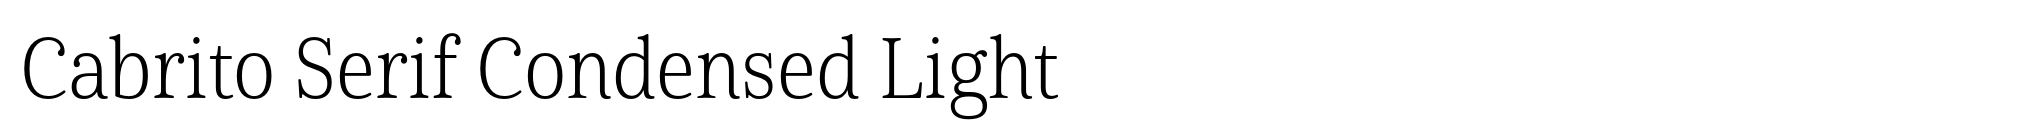 Cabrito Serif Condensed Light image